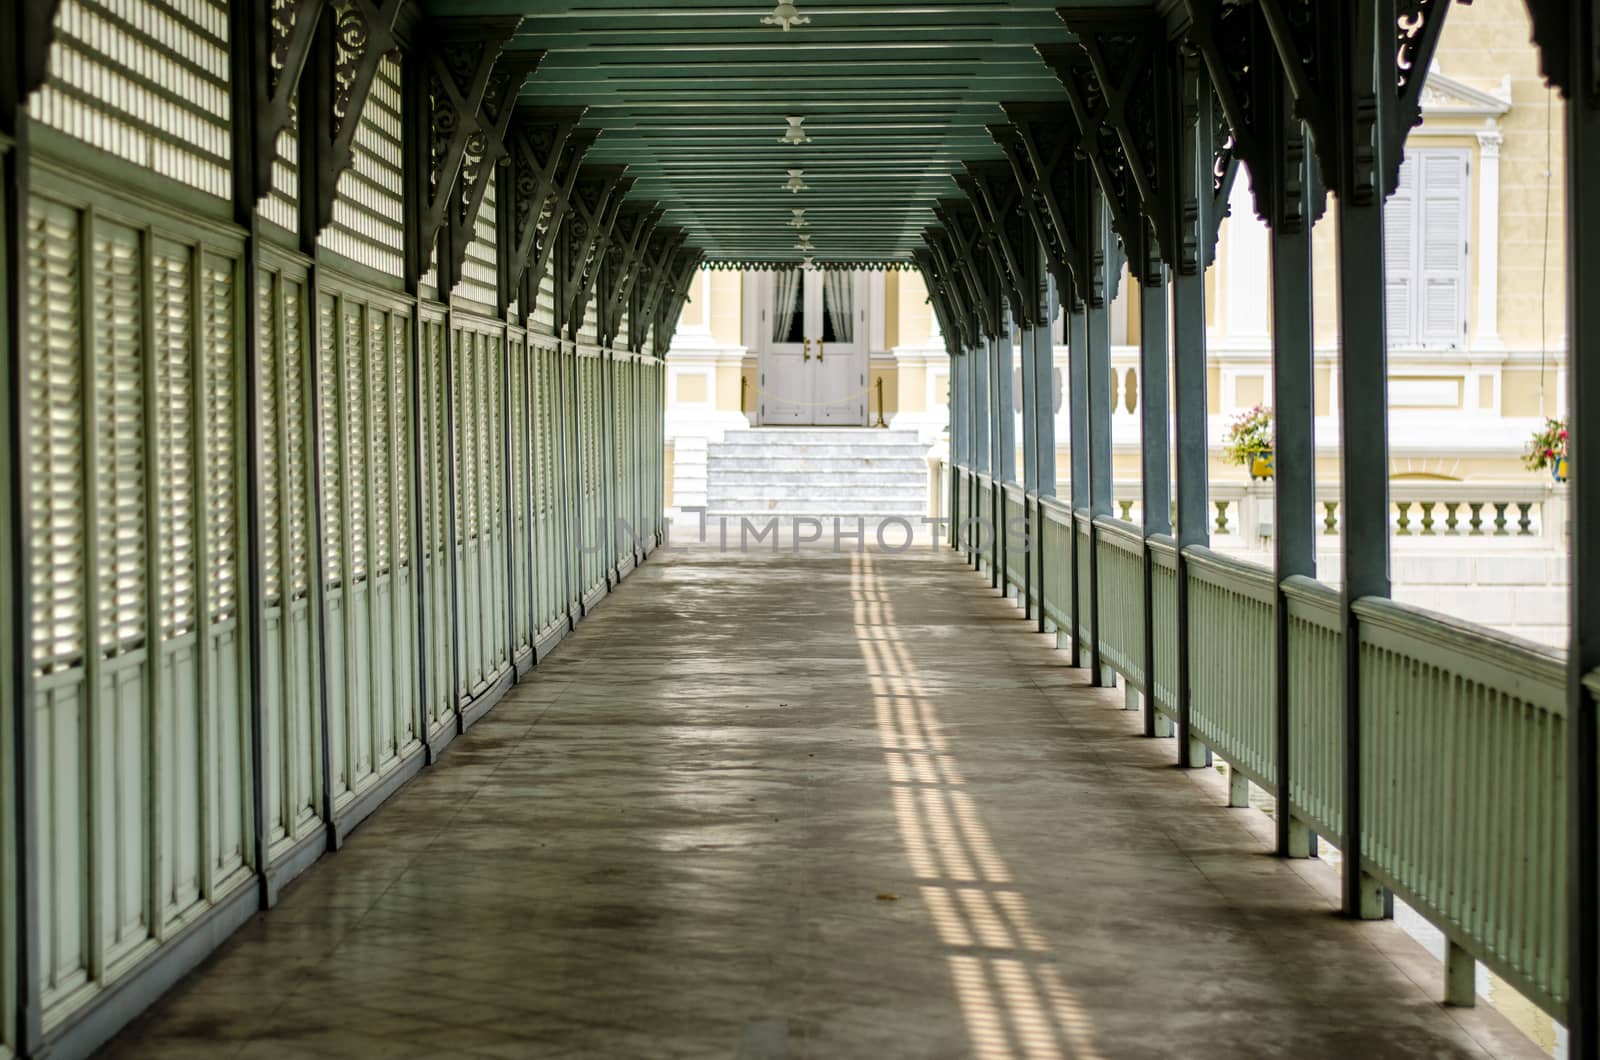 Corridor in summer royal palace of bang pa in.In-ayutthaya-tha iland